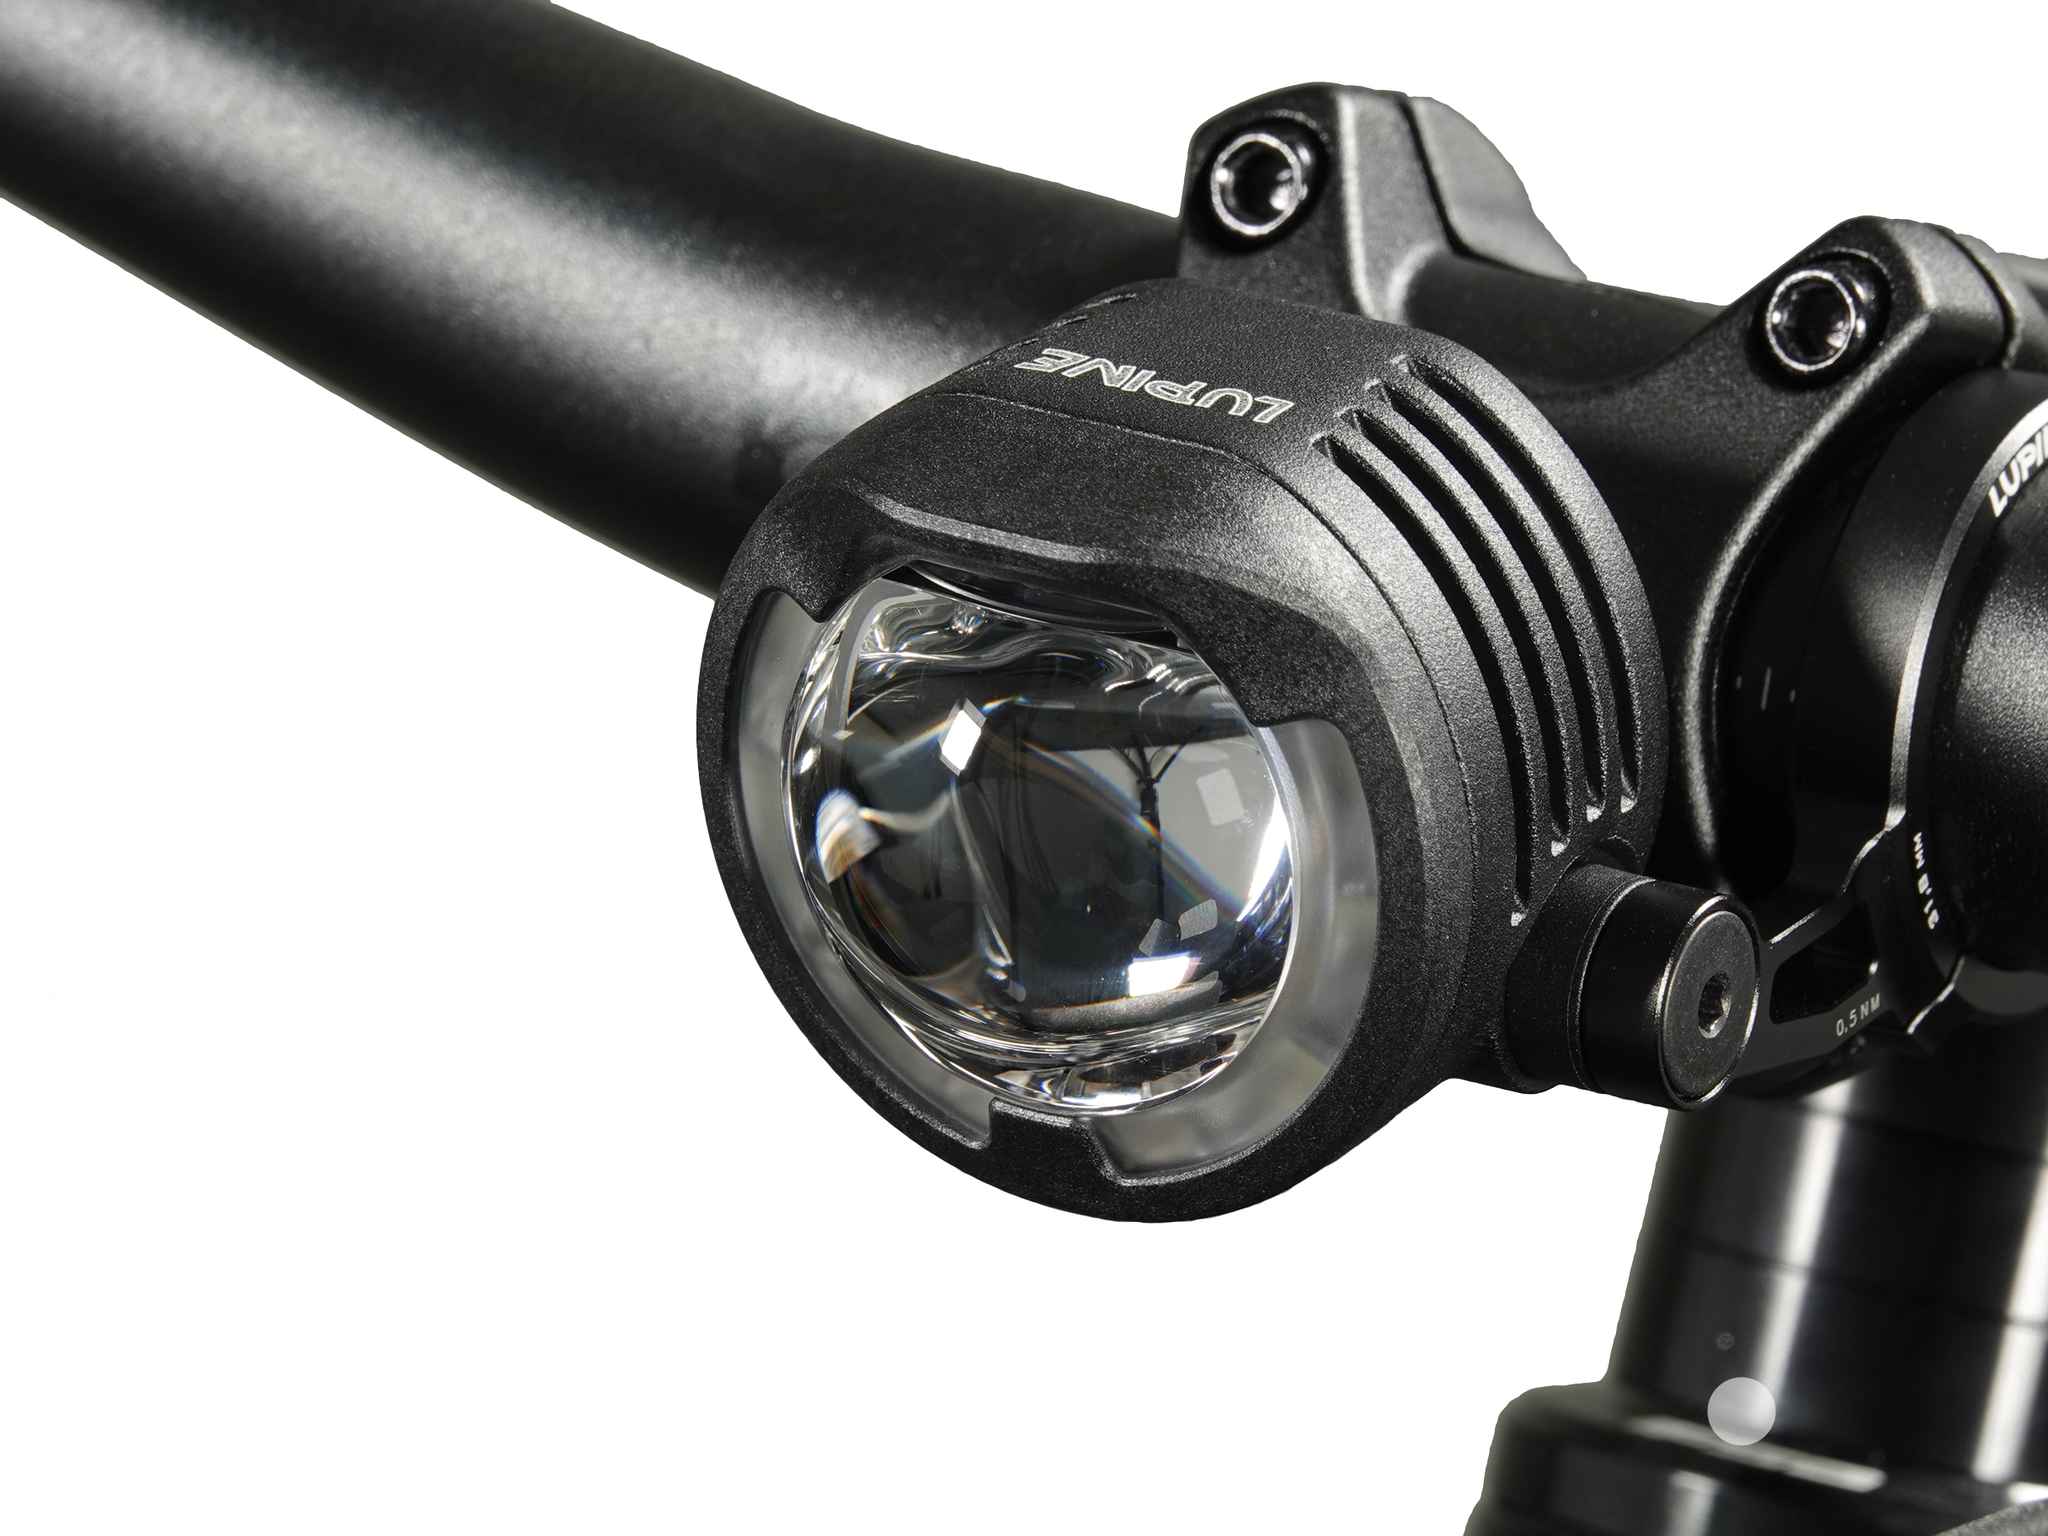 SL F BOSCH Purion/Kiox LED-Scheinwerfer mit Auf-/Abblendlicht, Schwarz